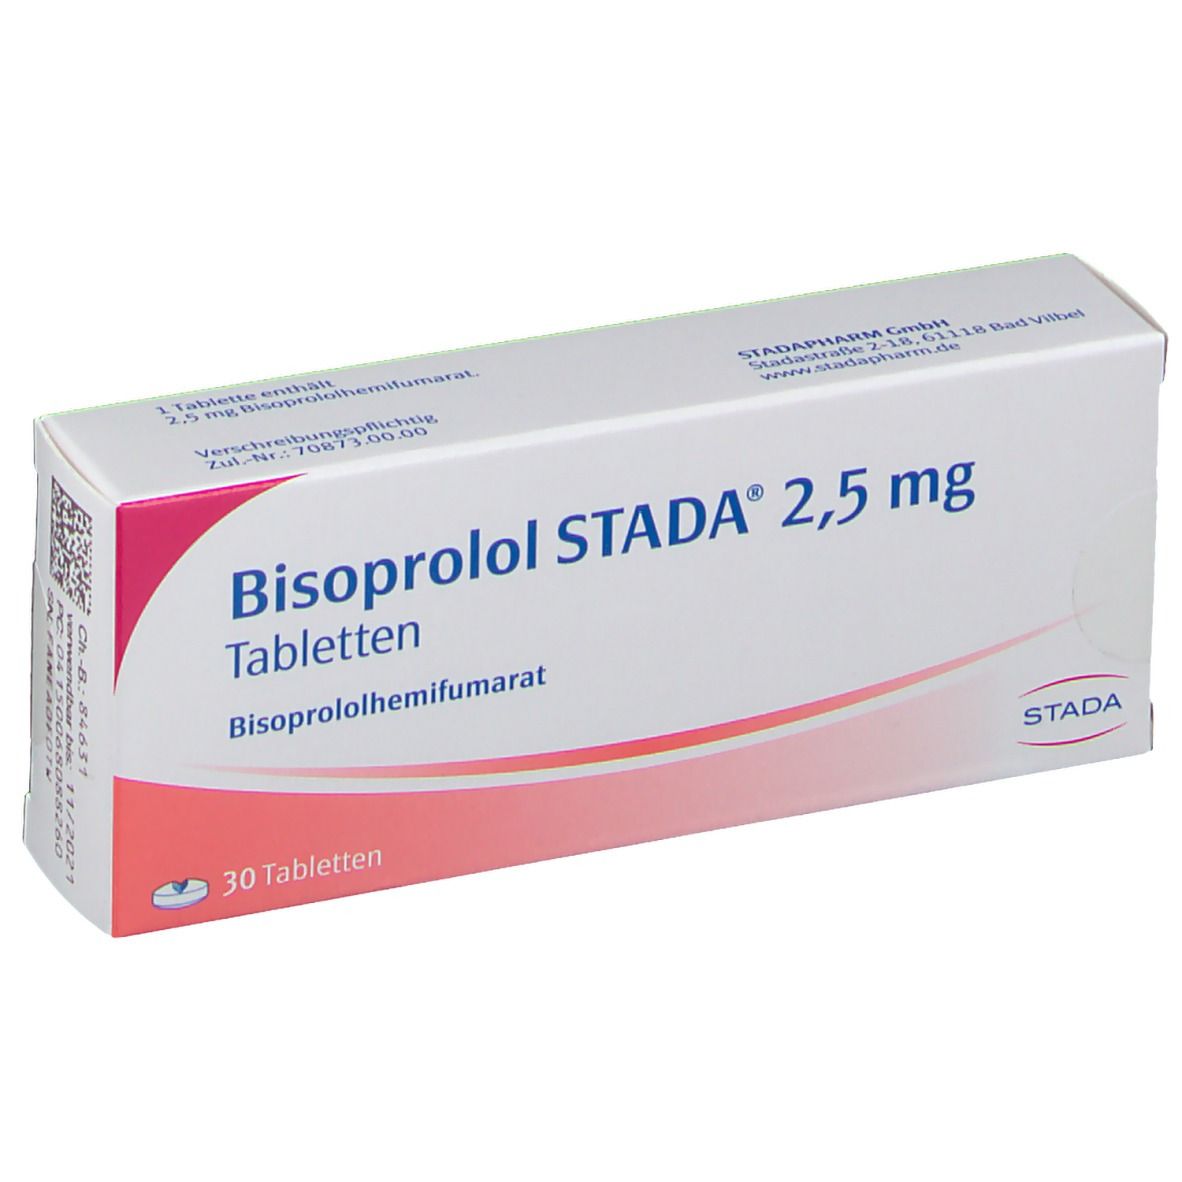 Bisoprolol 2.5 mg